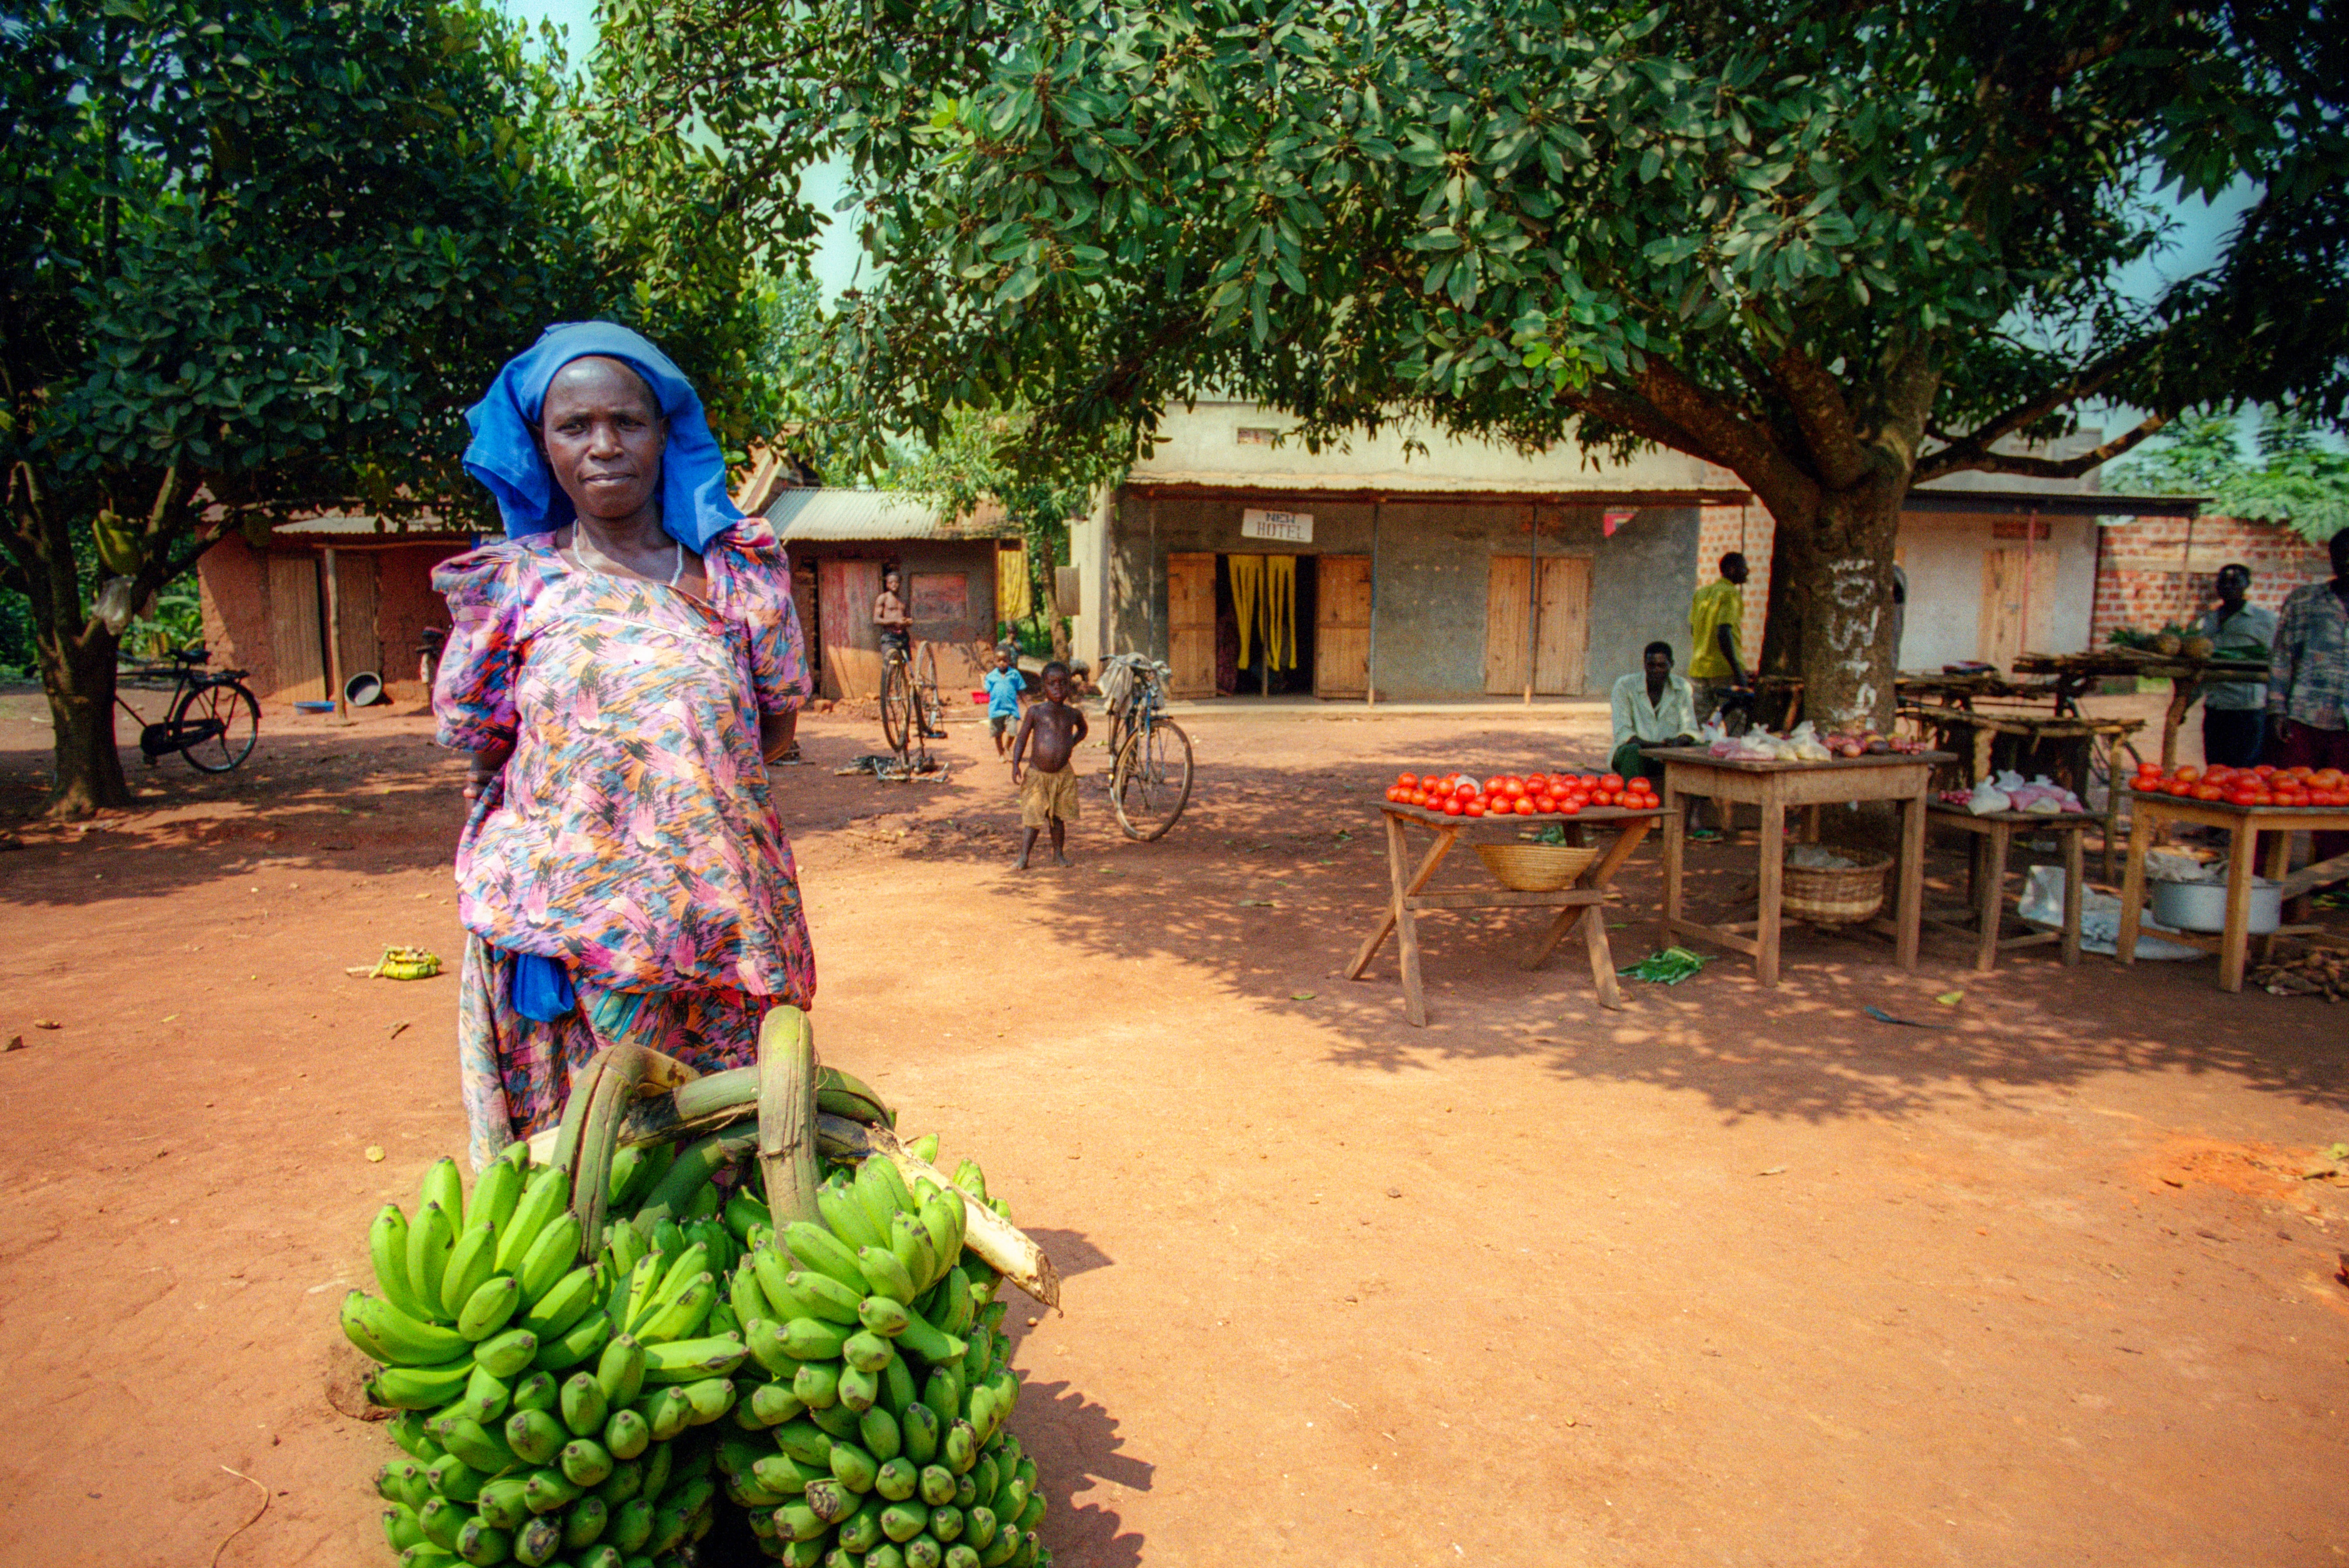 Banana seller in rural Uganda